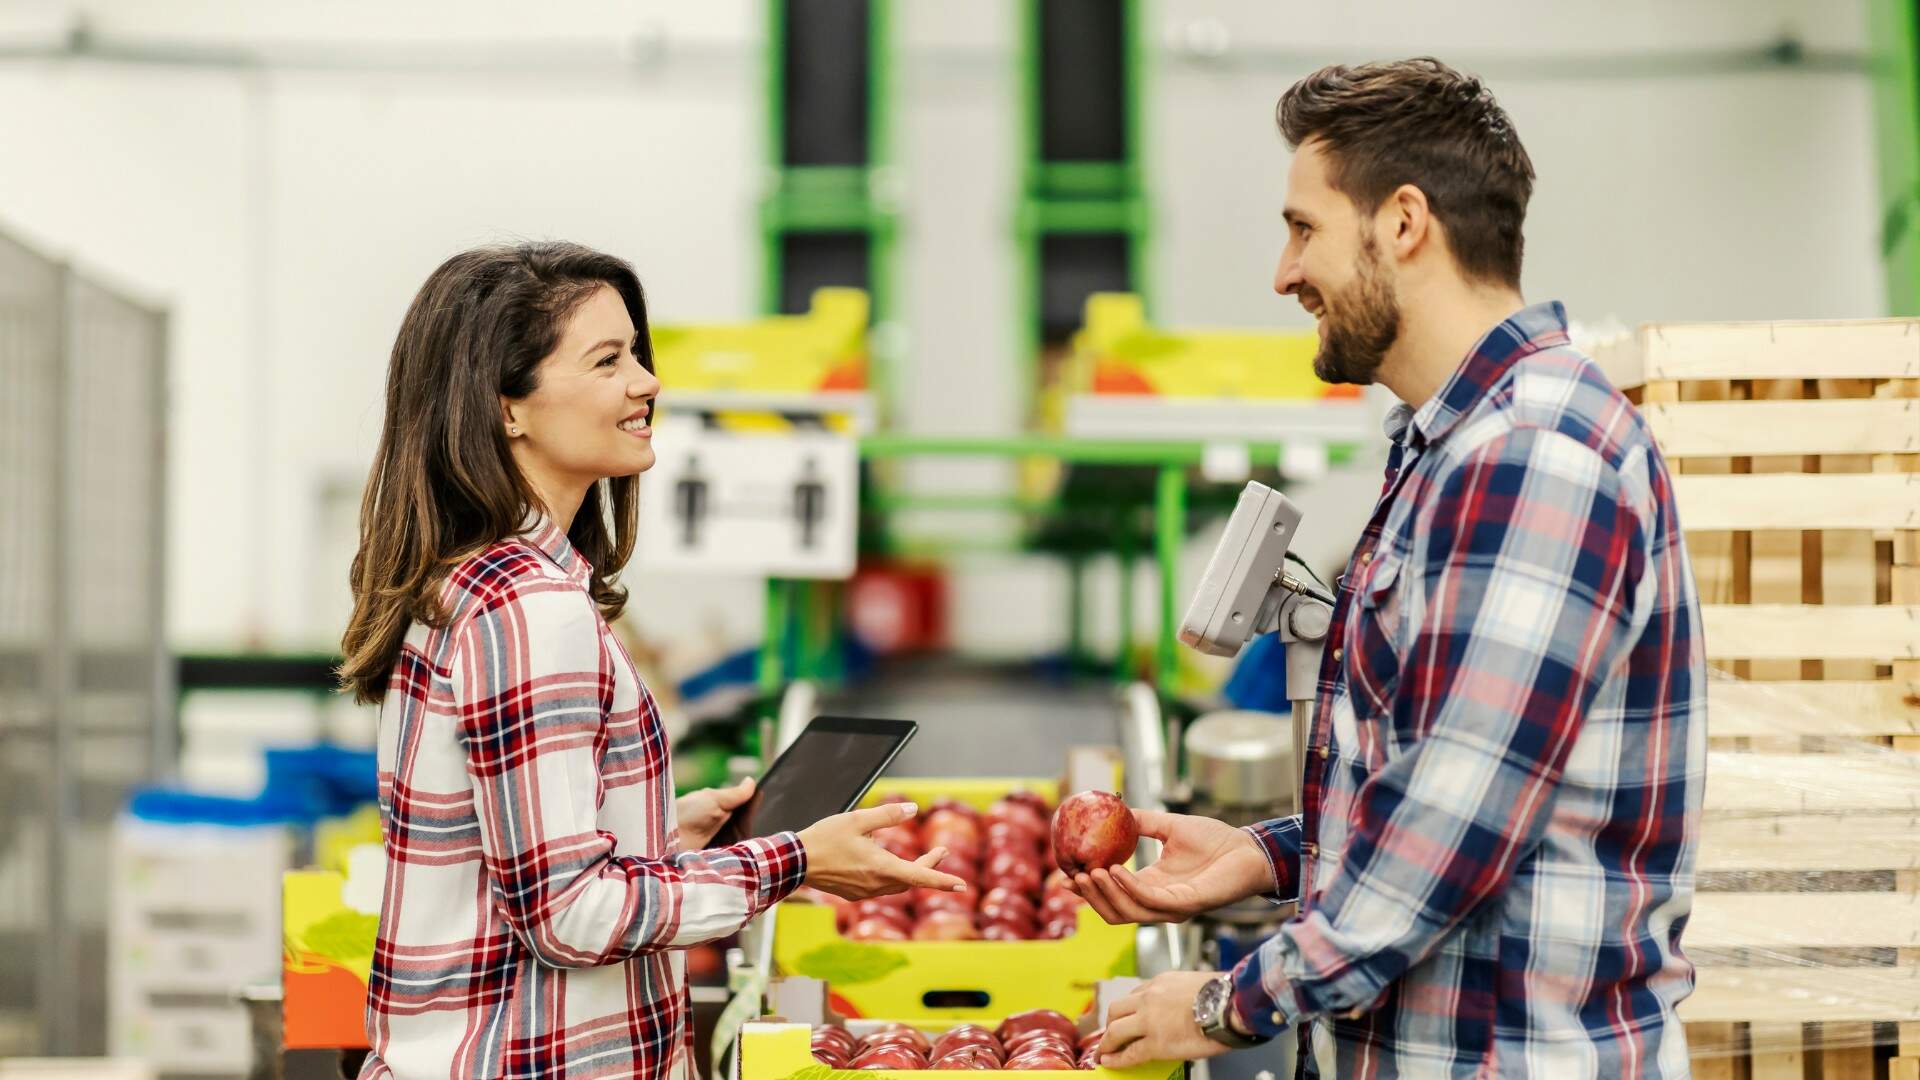 Duas pessoas sorrindo e interagindo em um armazém de alimentos, uma segurando uma maçã e a outra usando um dispositivo móvel de digitalização.